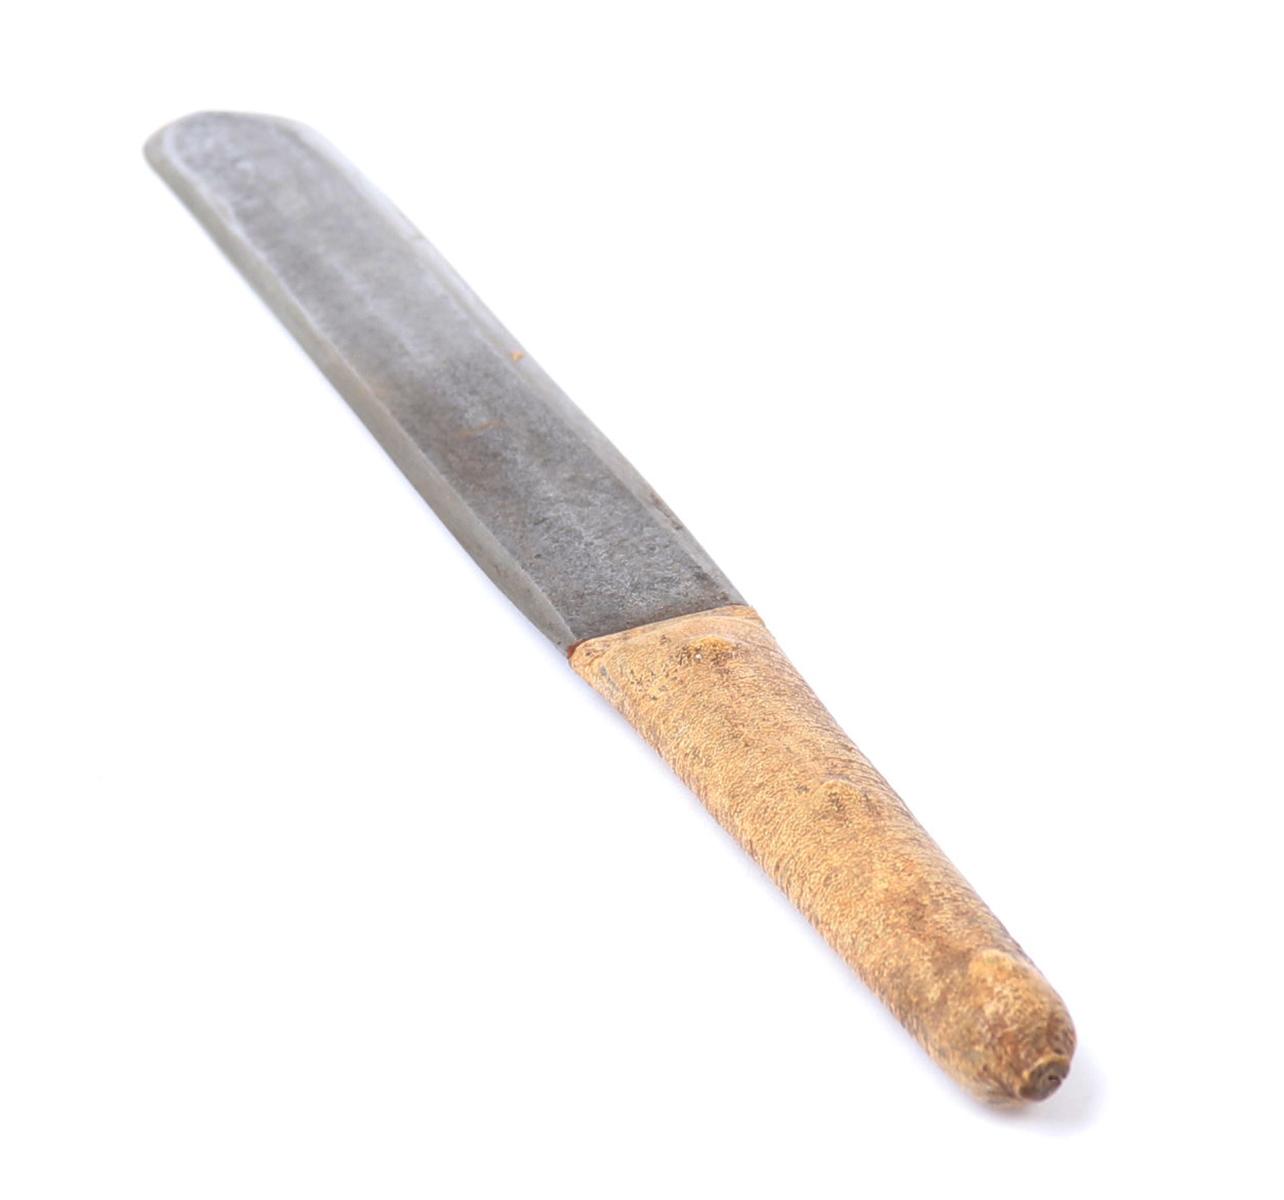 Native Beaded Knife or Short Sword